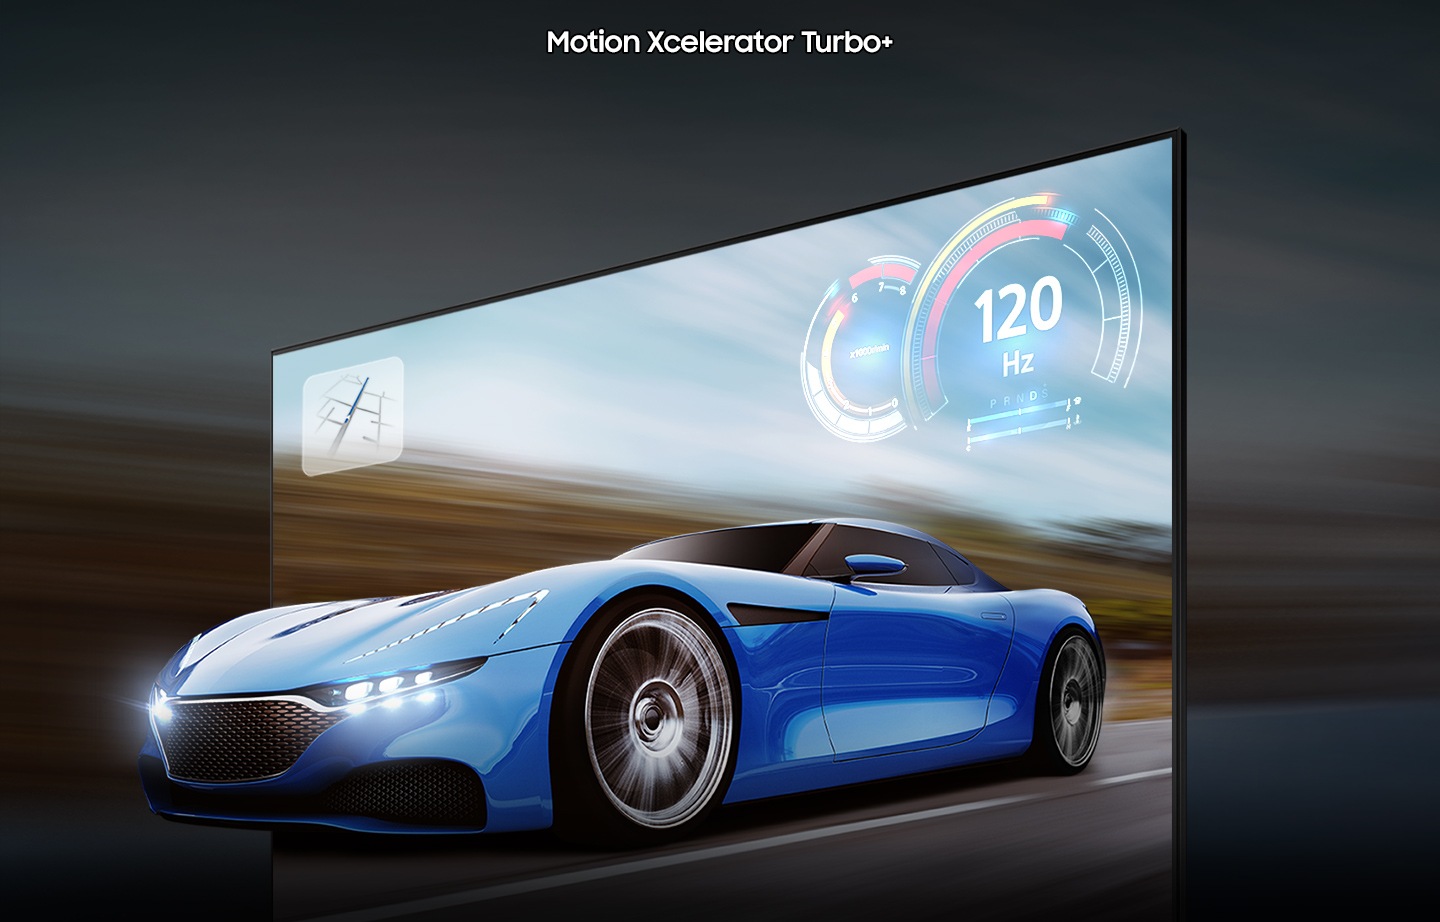 ดูรีวิวทีวี Samsung QLED ให้ภาพที่ลื่นไหล เคลื่อนไหวที่เหนือชั้นในระดับ 4K 120Hz ด้วยเทคโนโลยี Motion Xcelerator Turbo+. รถแข่งบนหน้าจอทีวี QLED ดูชัดเจนมากกว่าทีวีทั่วไป ด้วยเทคโนโลยี Motion Xcelerator Turbo+